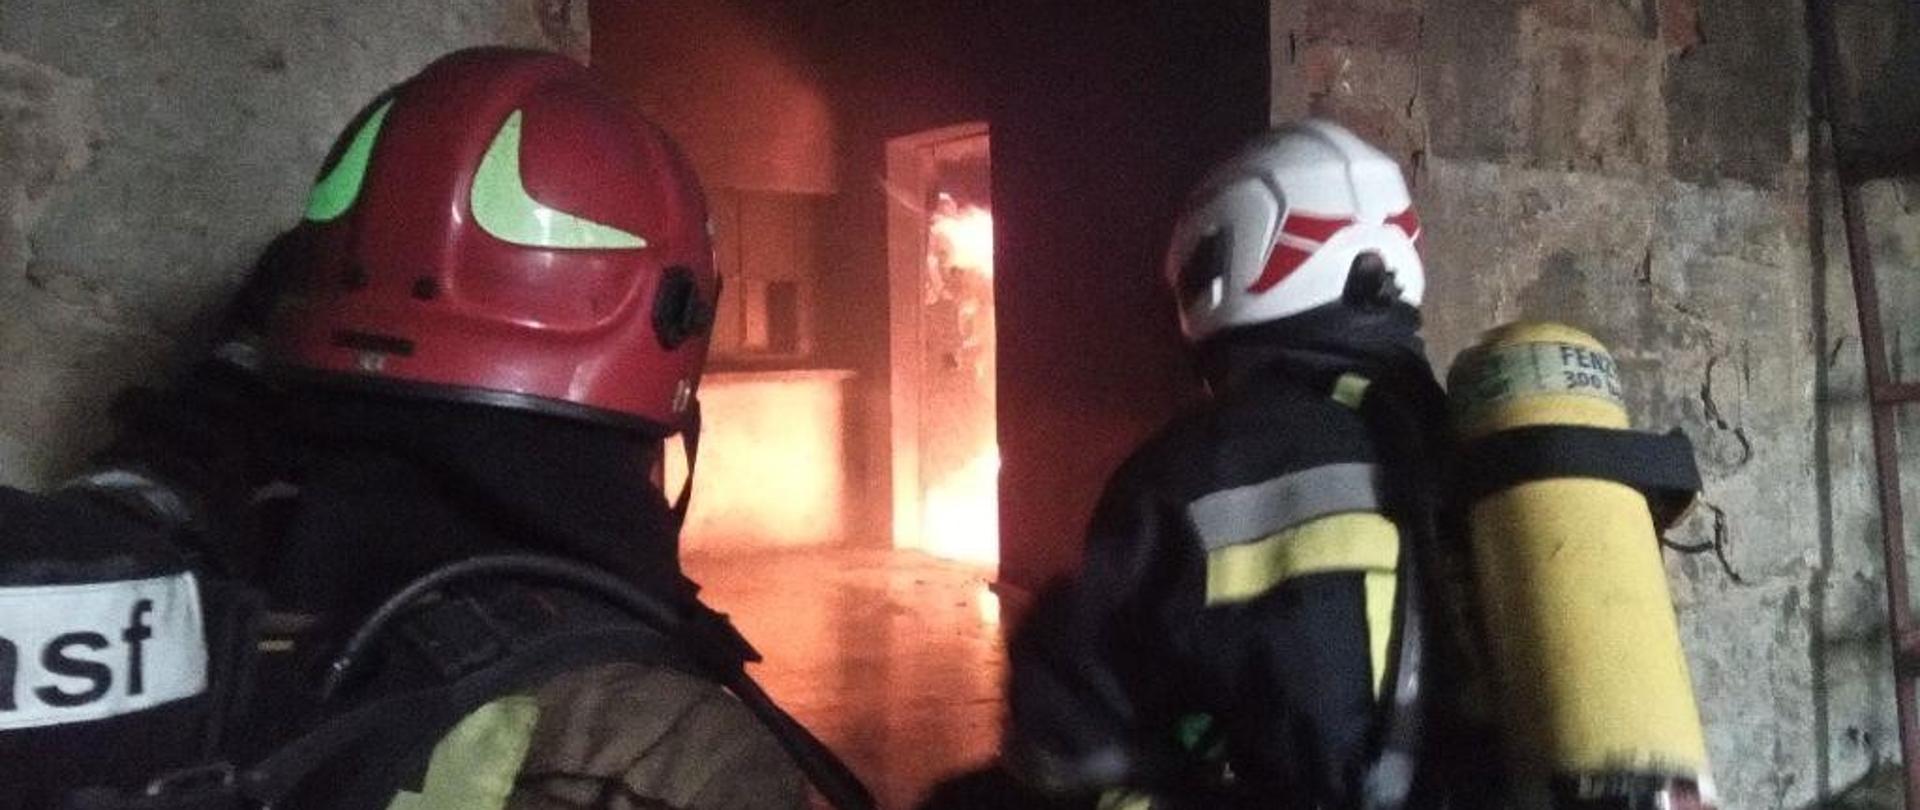 Strażacy wchodzący do płonącego pomieszczenia.